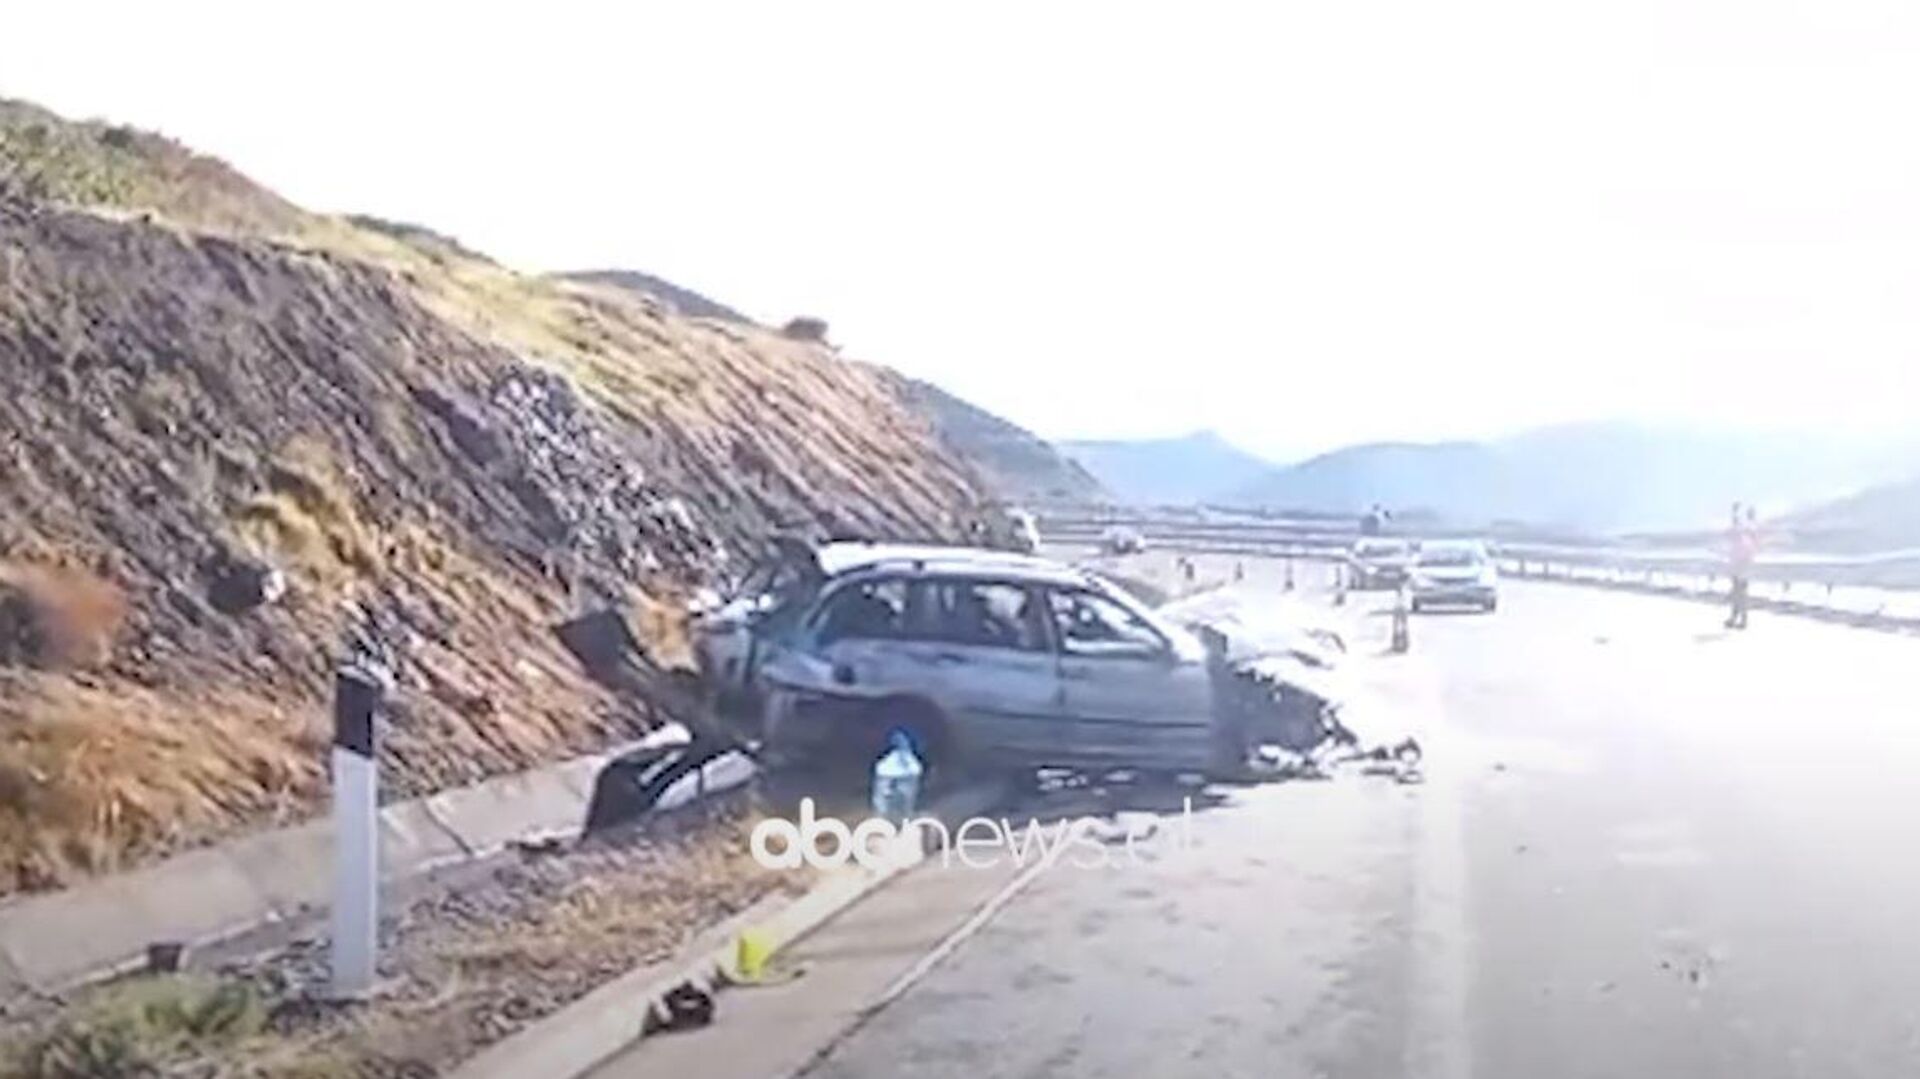 Heavy трафик в Албании : Автомобиль с сербскими номерами разбит, пассажиры ранены, в том числе дети